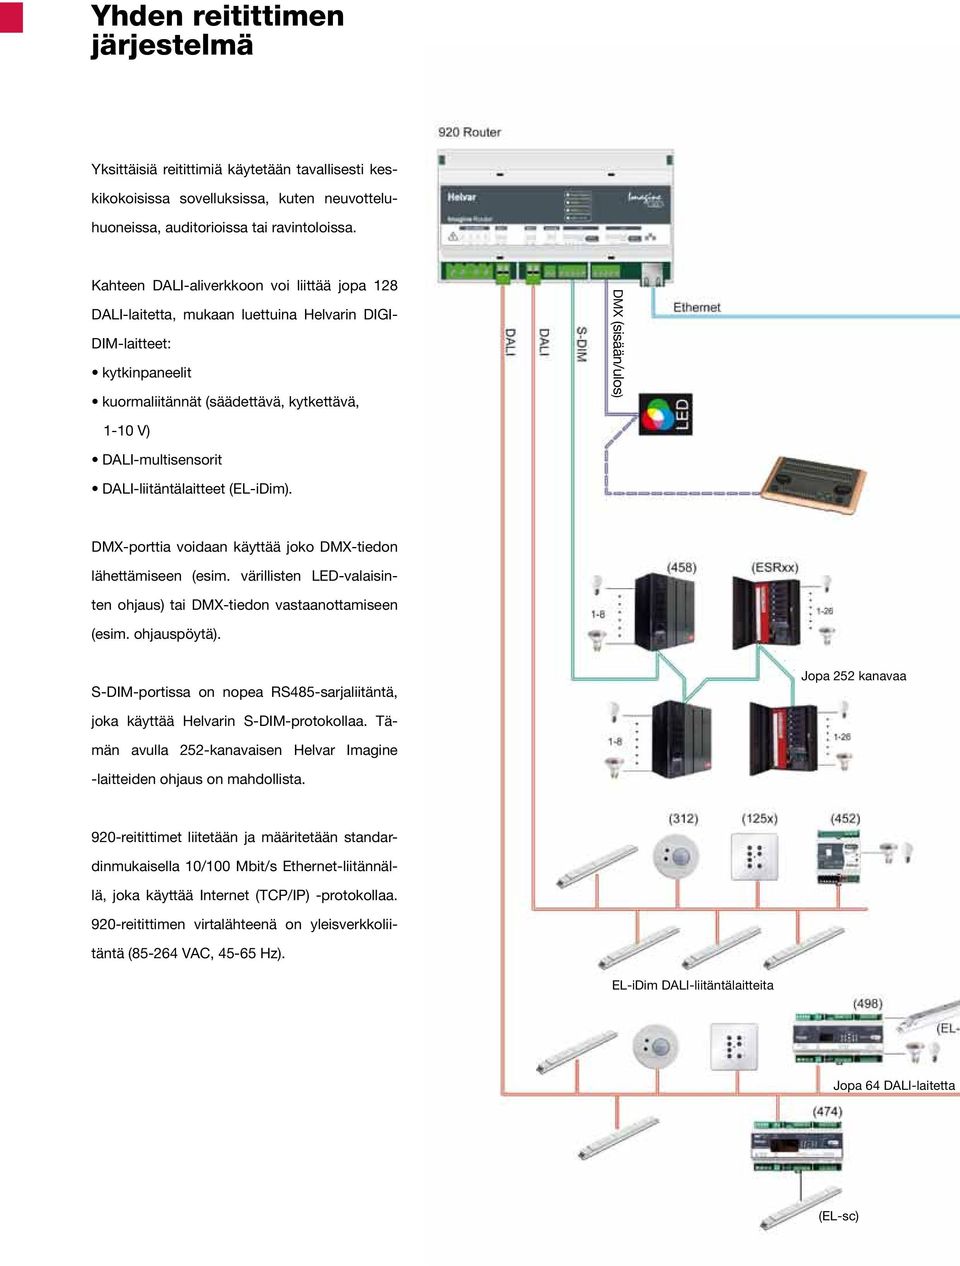 DALI-multisensorit DALI-liitäntälaitteet (EL-iDim). DMX-porttia voidaan käyttää joko DMX-tiedon lähettämiseen (esim. värillisten LED-valaisinten ohjaus) tai DMX-tiedon vastaanottamiseen (esim.